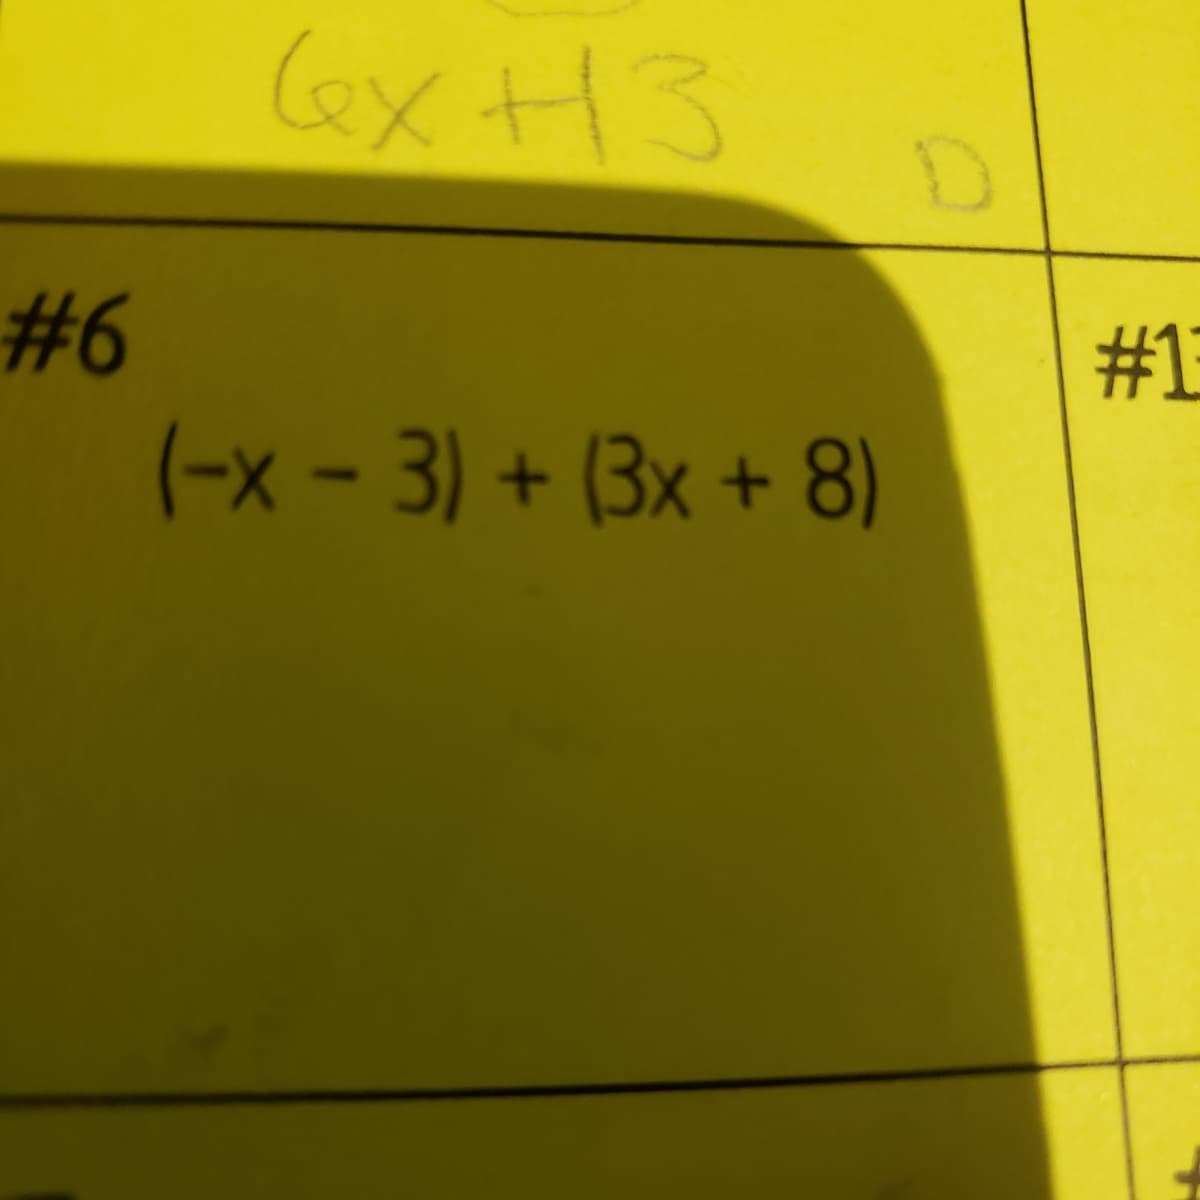 ex H3
#6
#1
(-x - 3) + (3x + 8)
